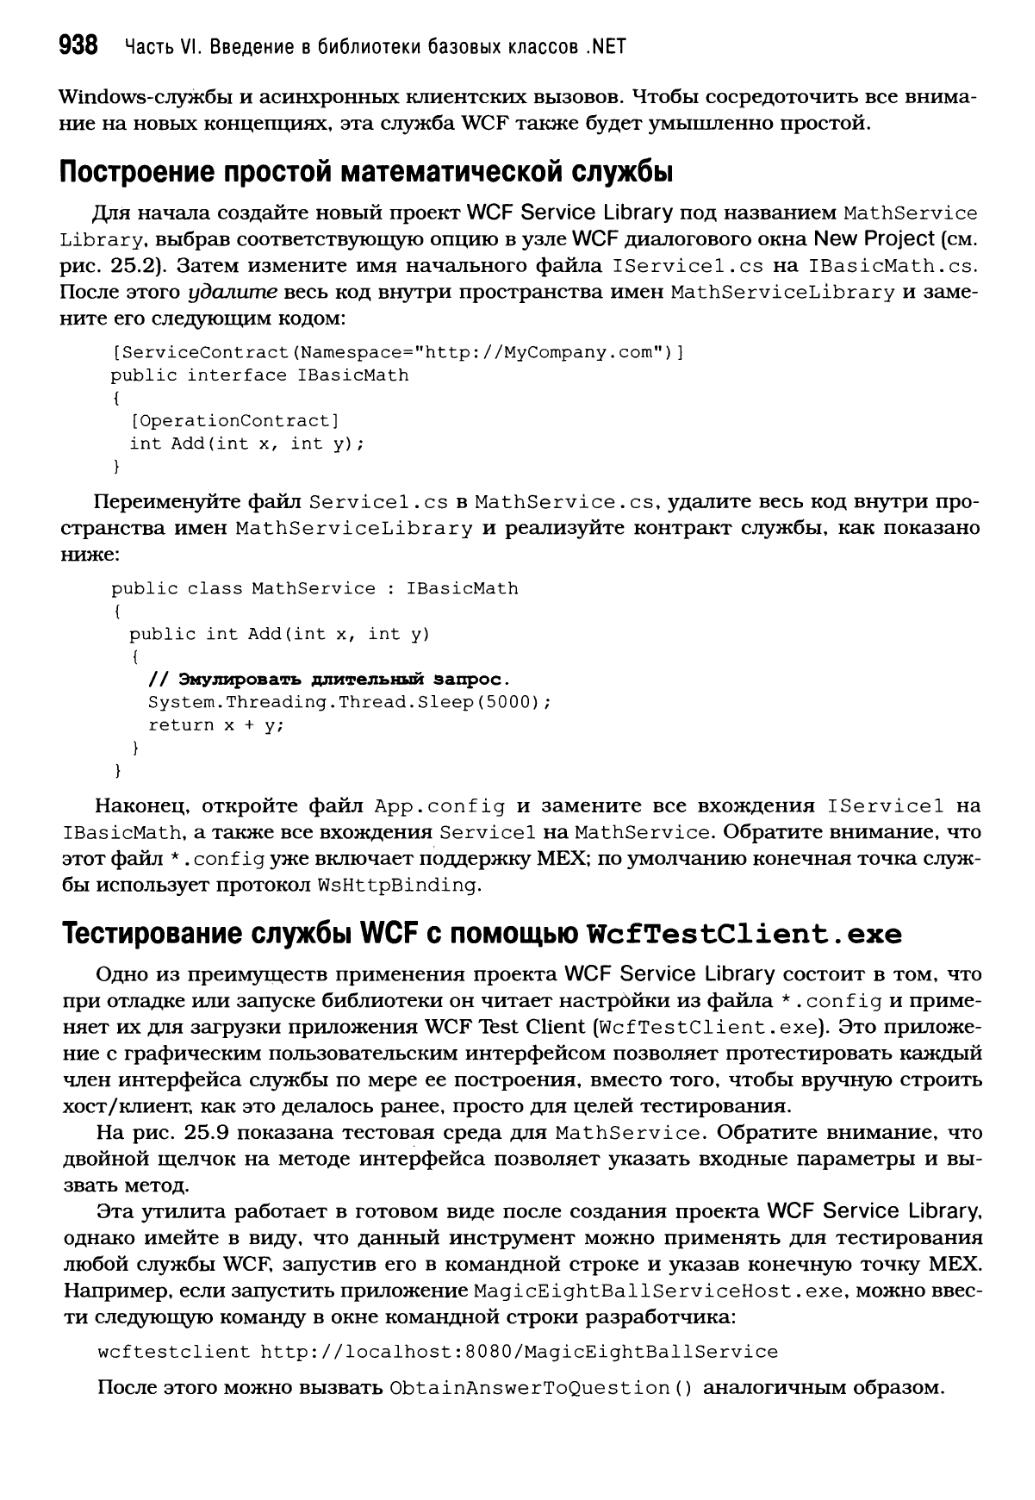 Тестирование службы WCF с помощью WcfTestClient.exe